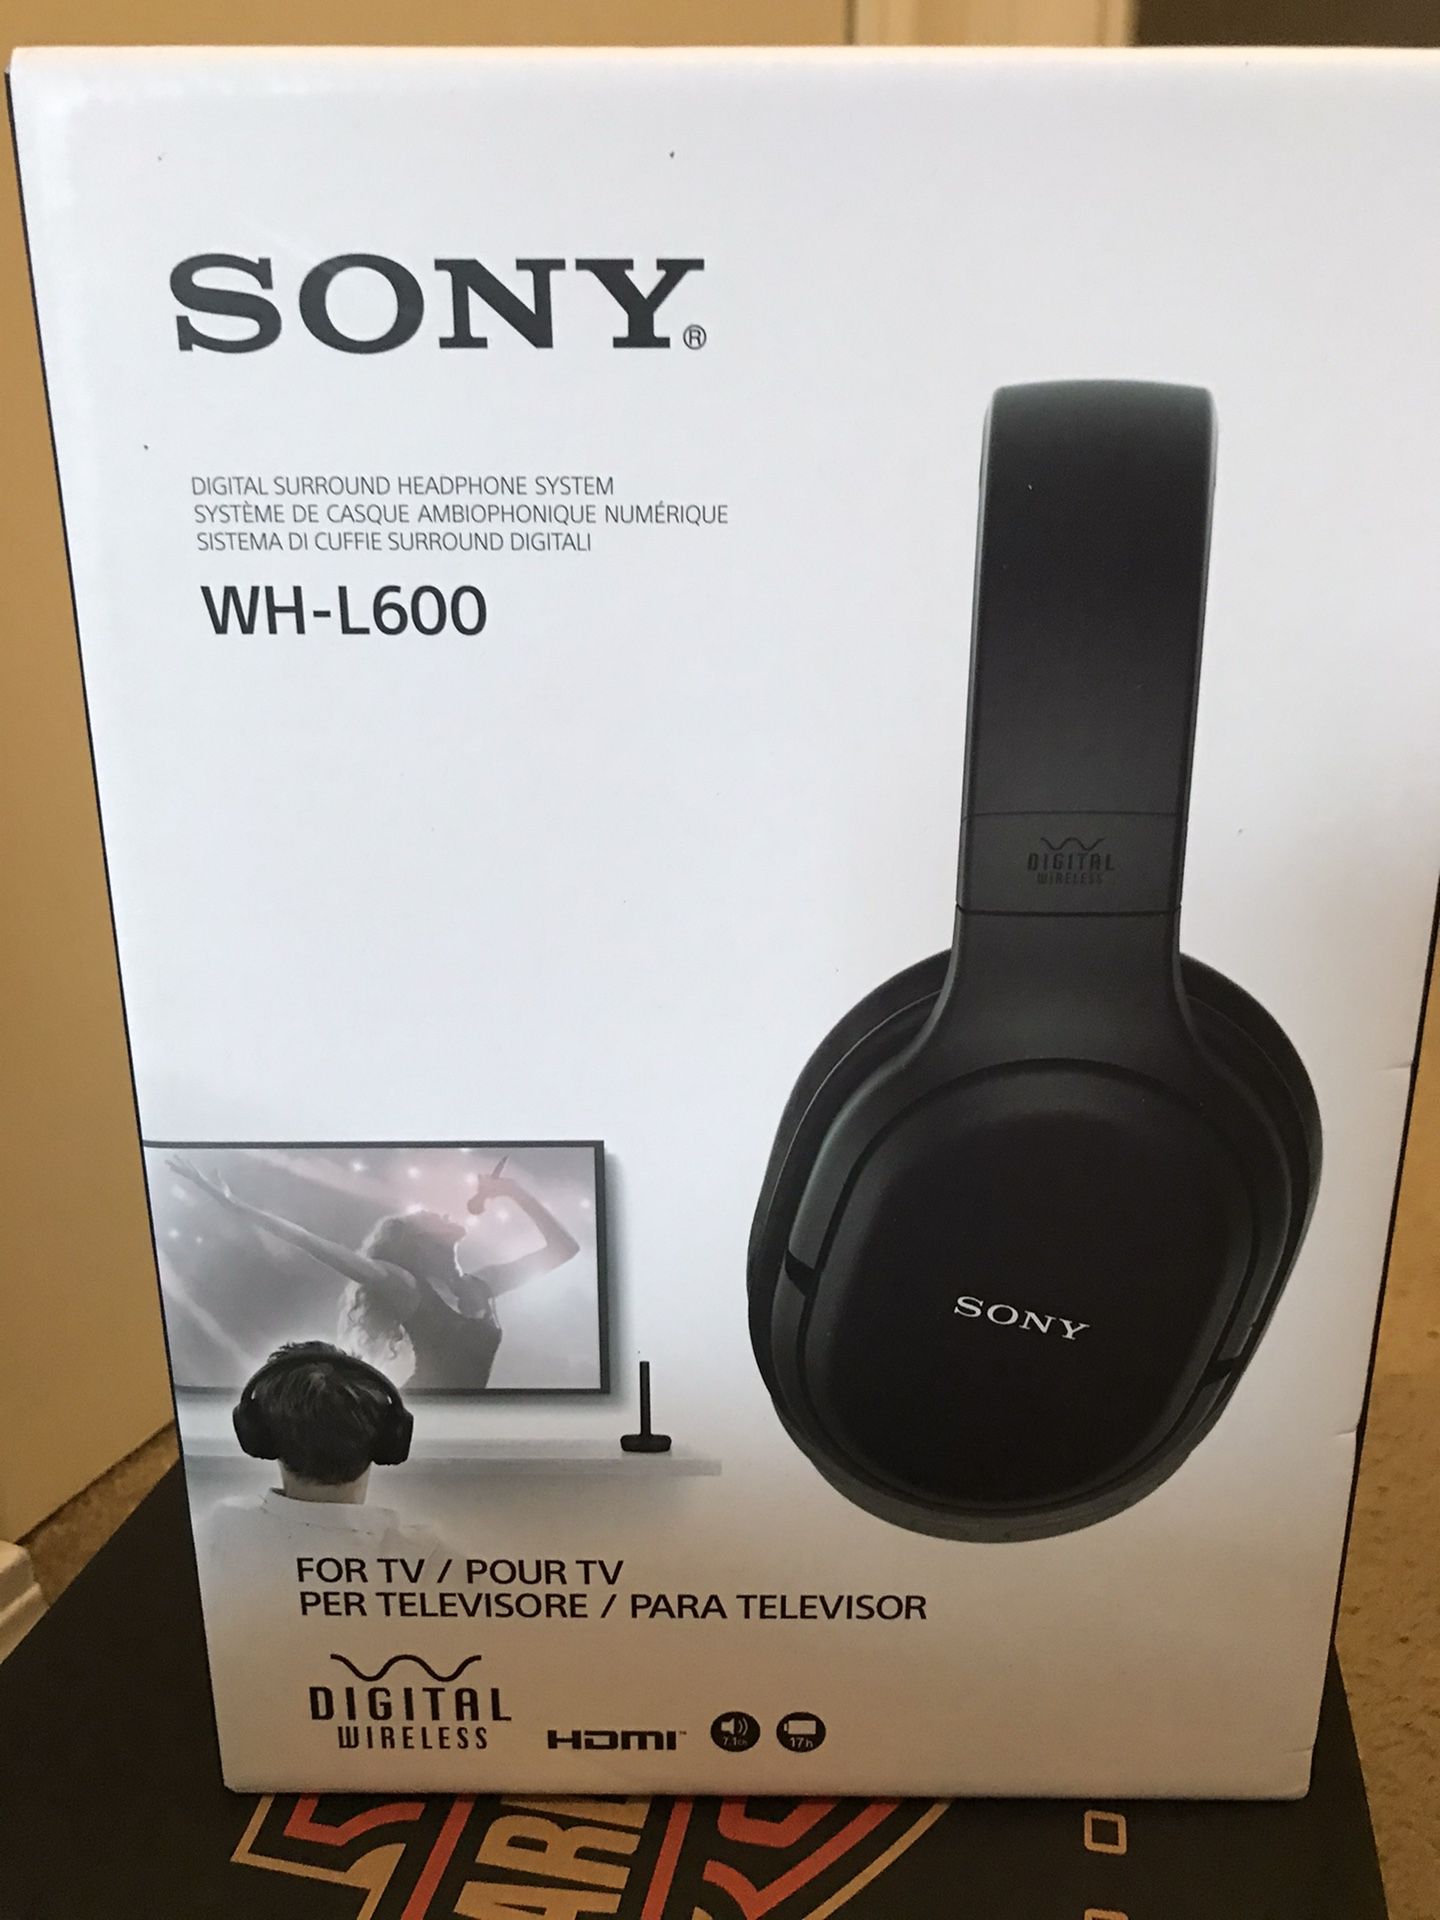 Sony headphones WH-L600